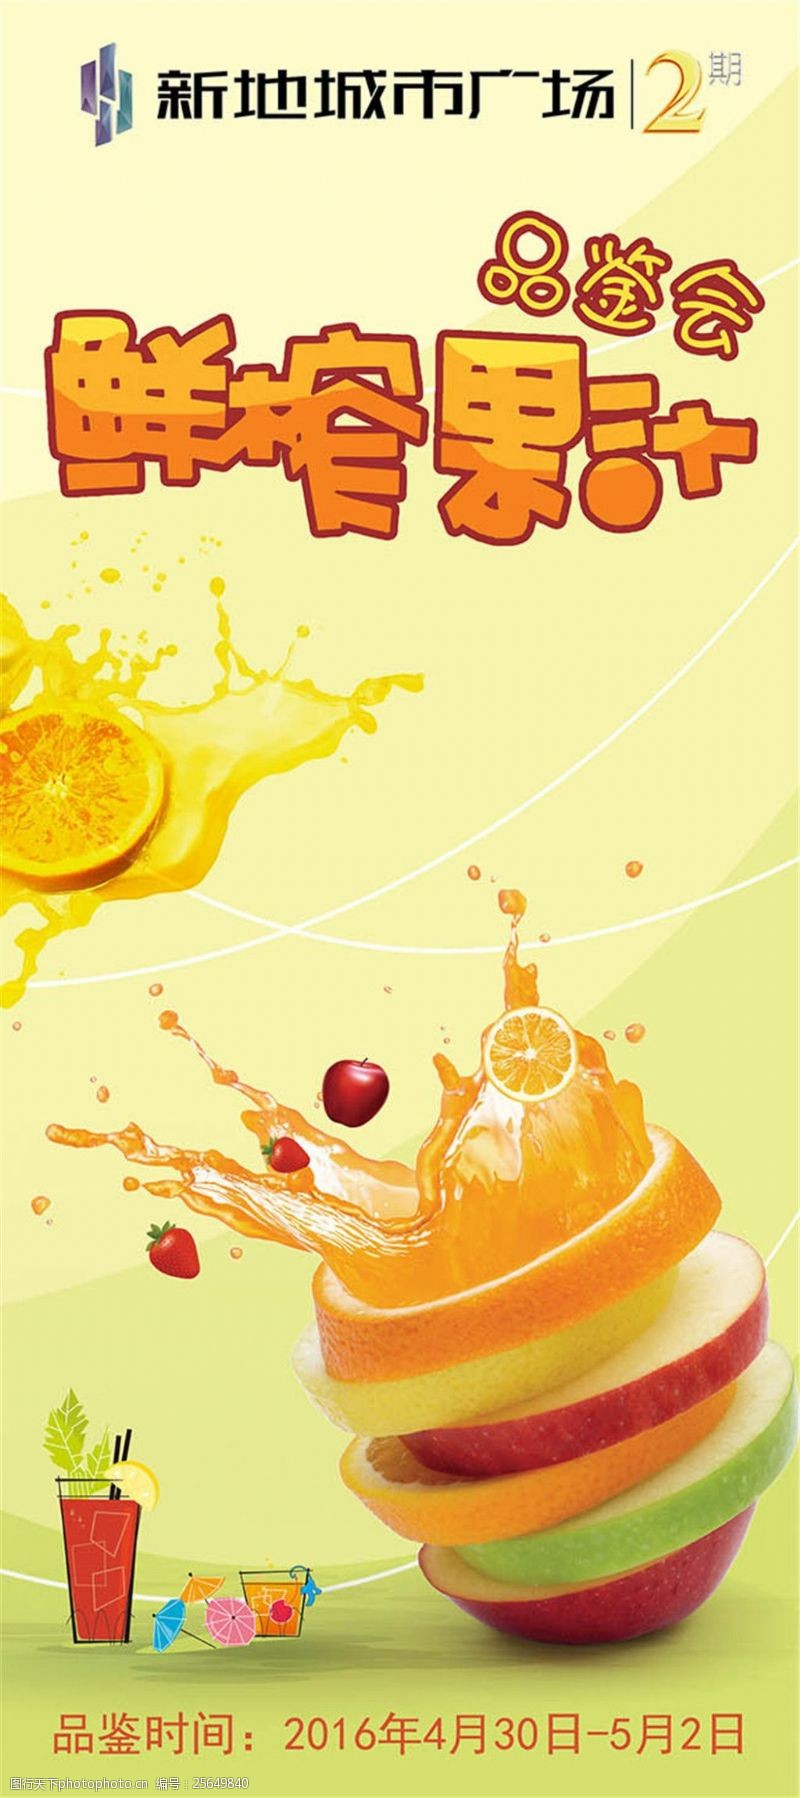 果汁饮料设计鲜榨果汁品鉴会活动宣传x展架模板psd素材下载